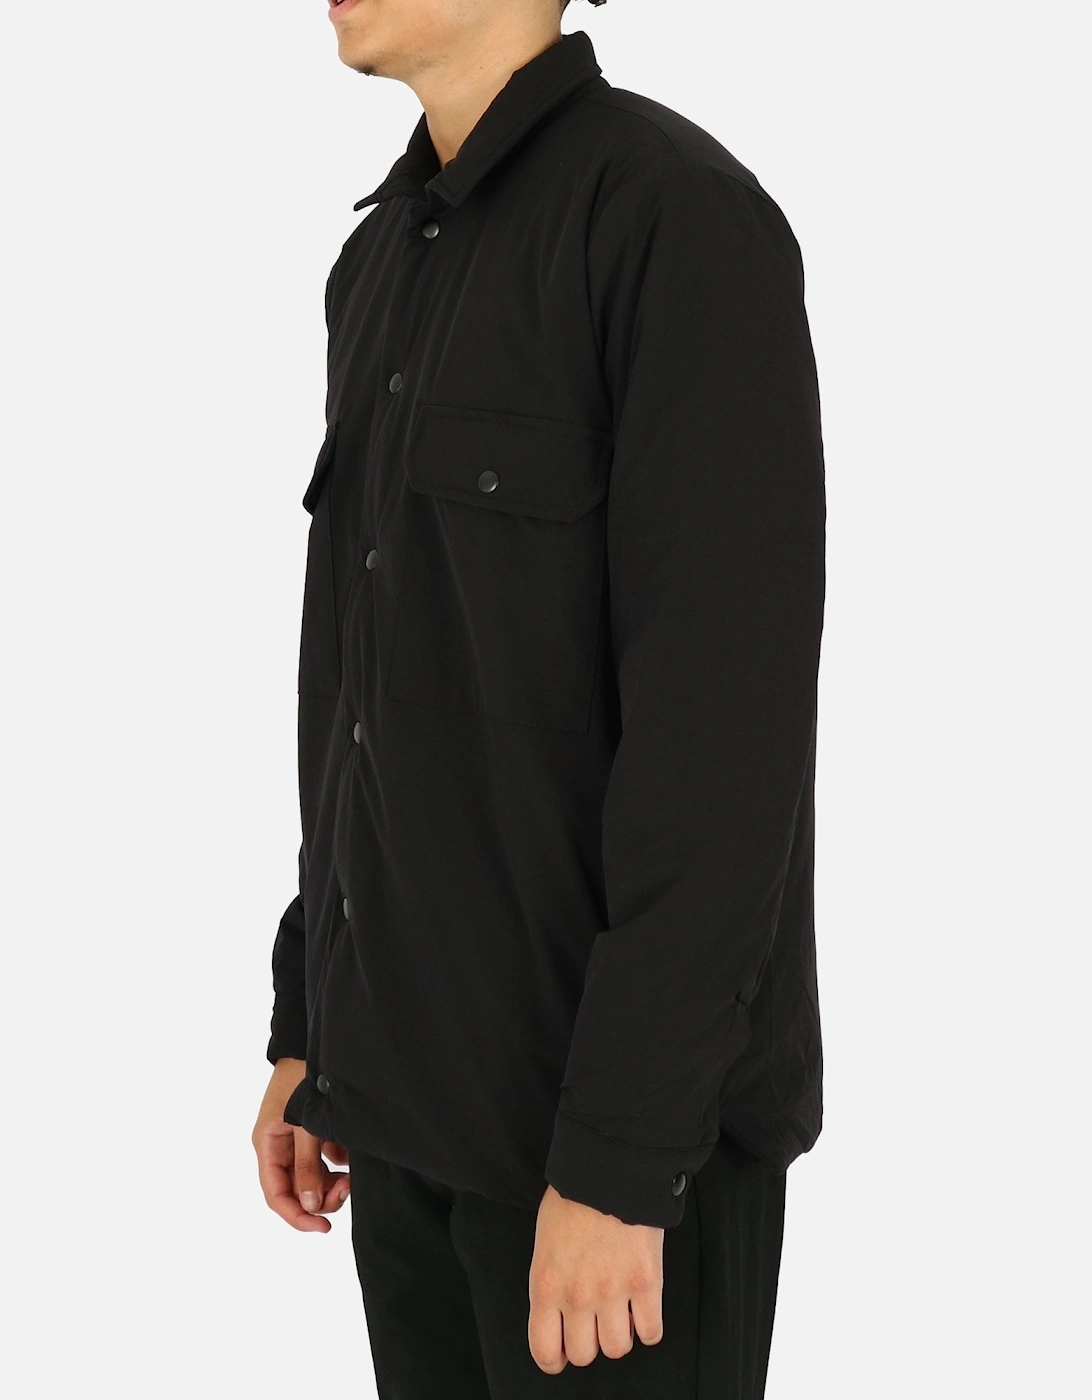 Padded Black Overshirt Jacket